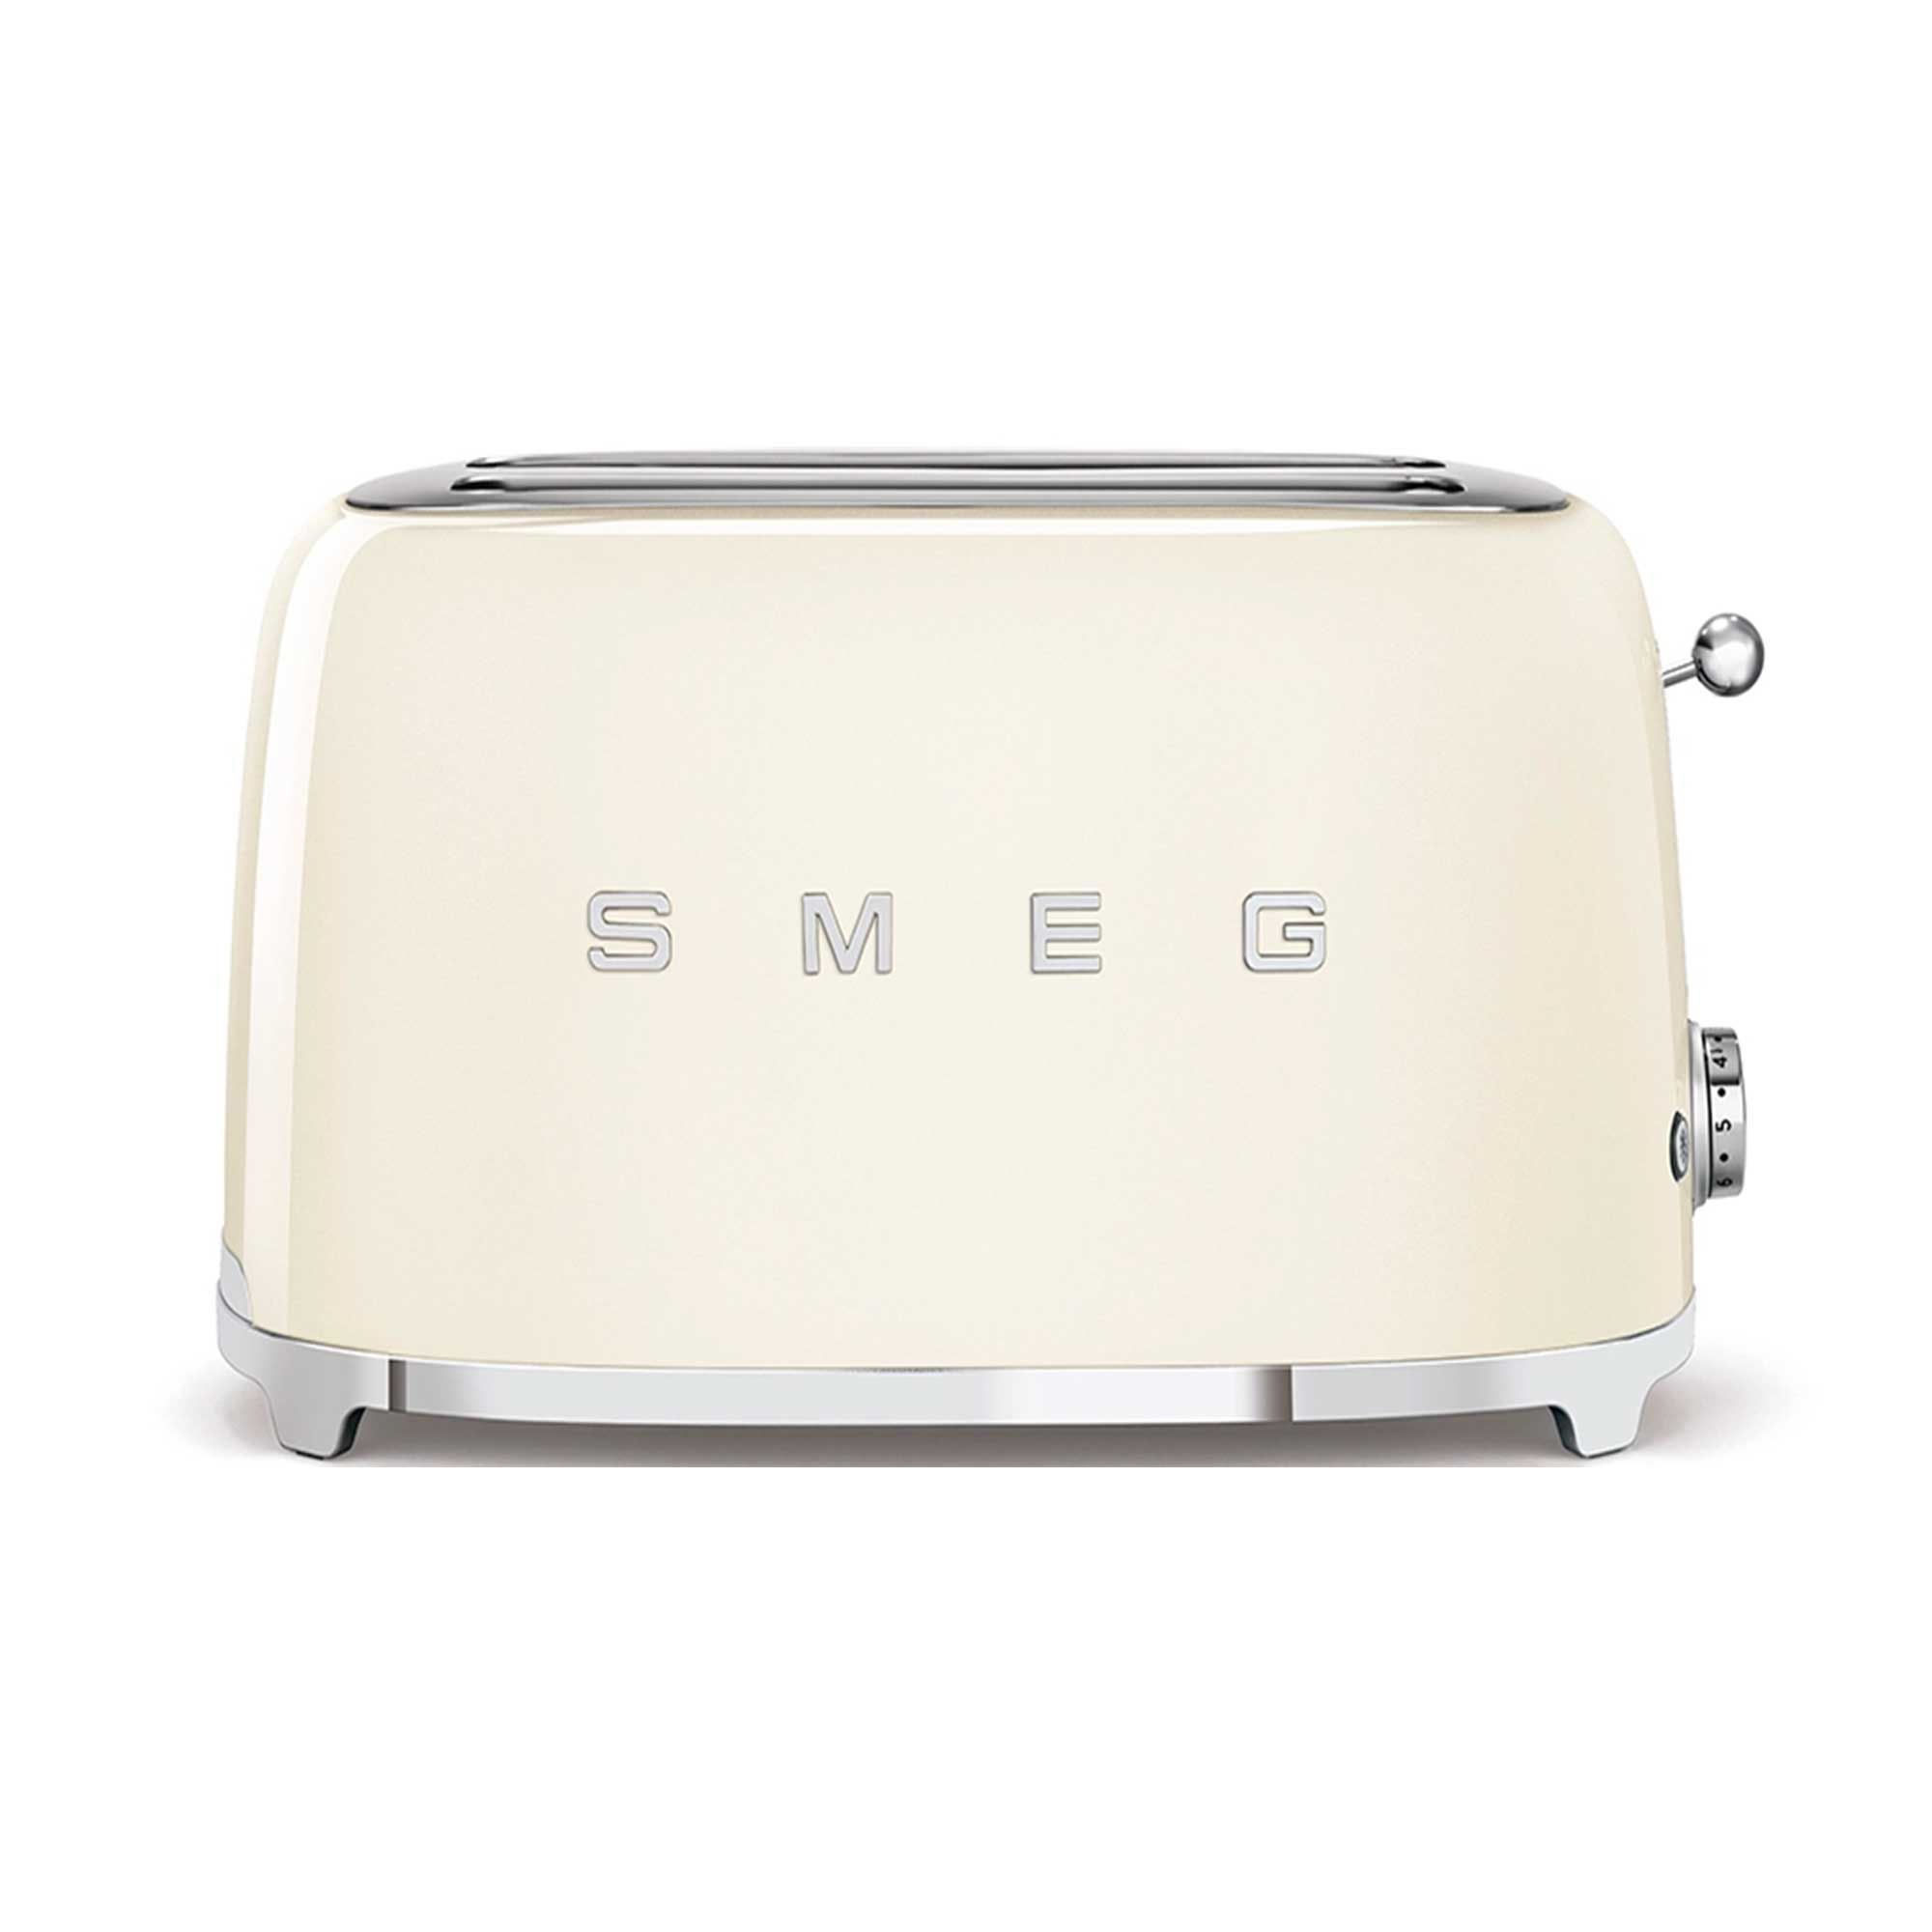 Smeg SMEG 2 Slice Toaster Cream - Toasters - Meubles